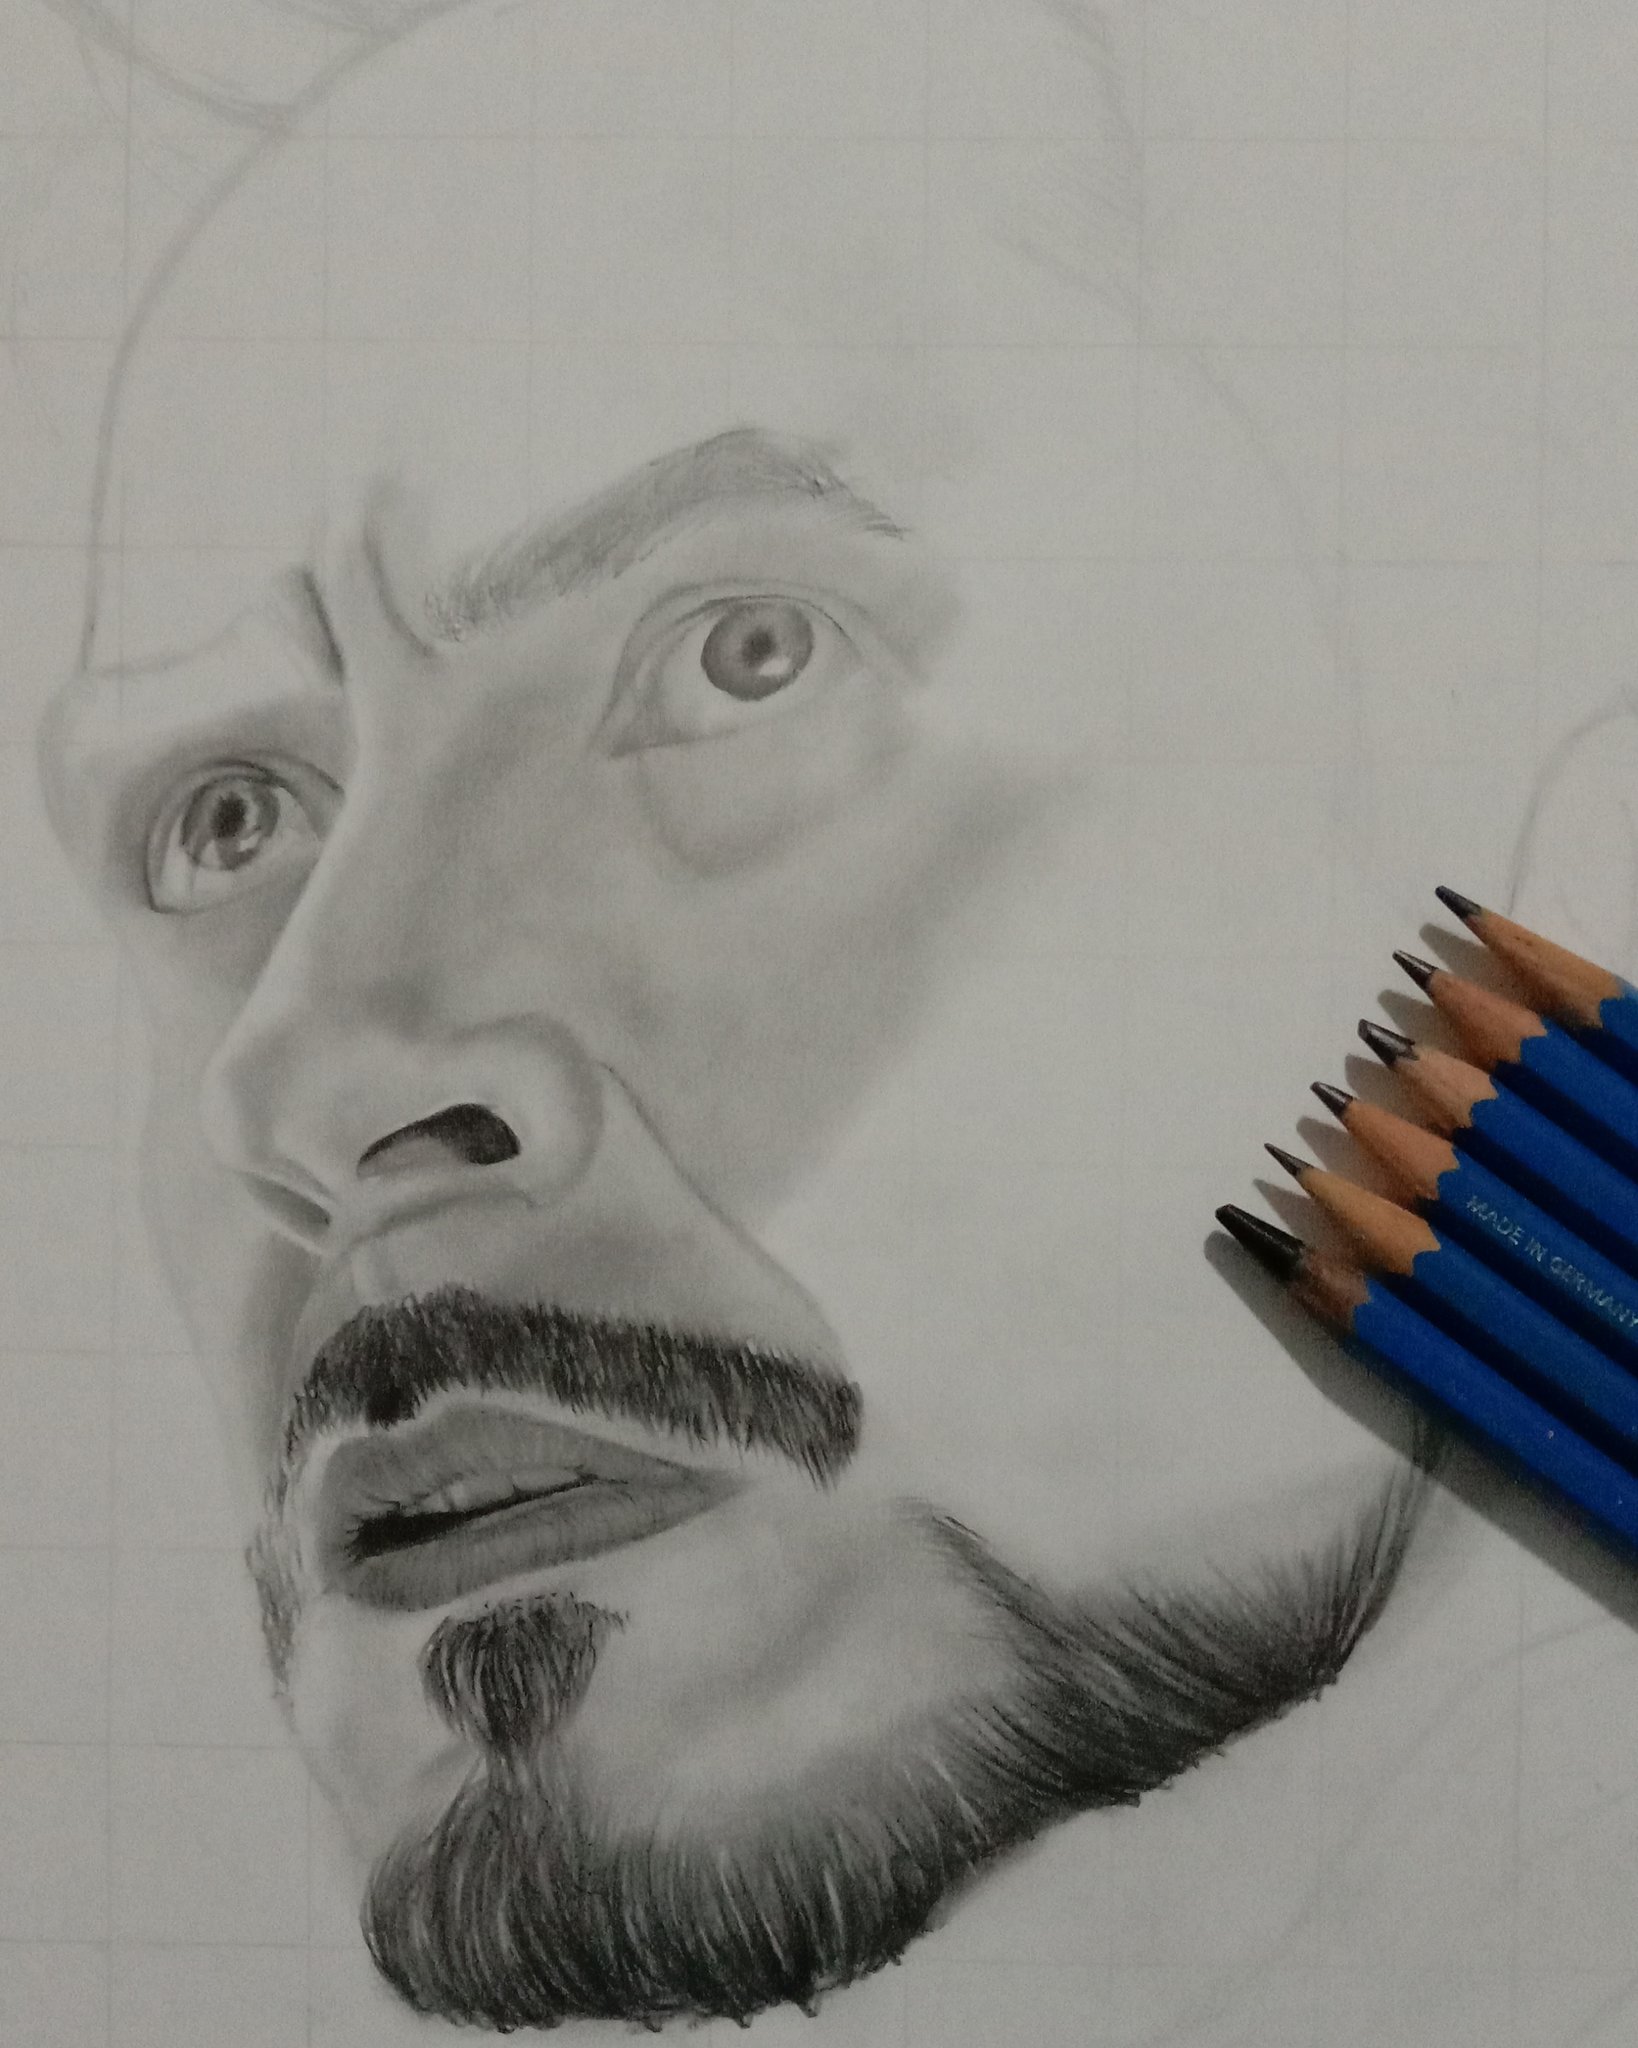 Tony Stark Drawing Image - Drawing Skill